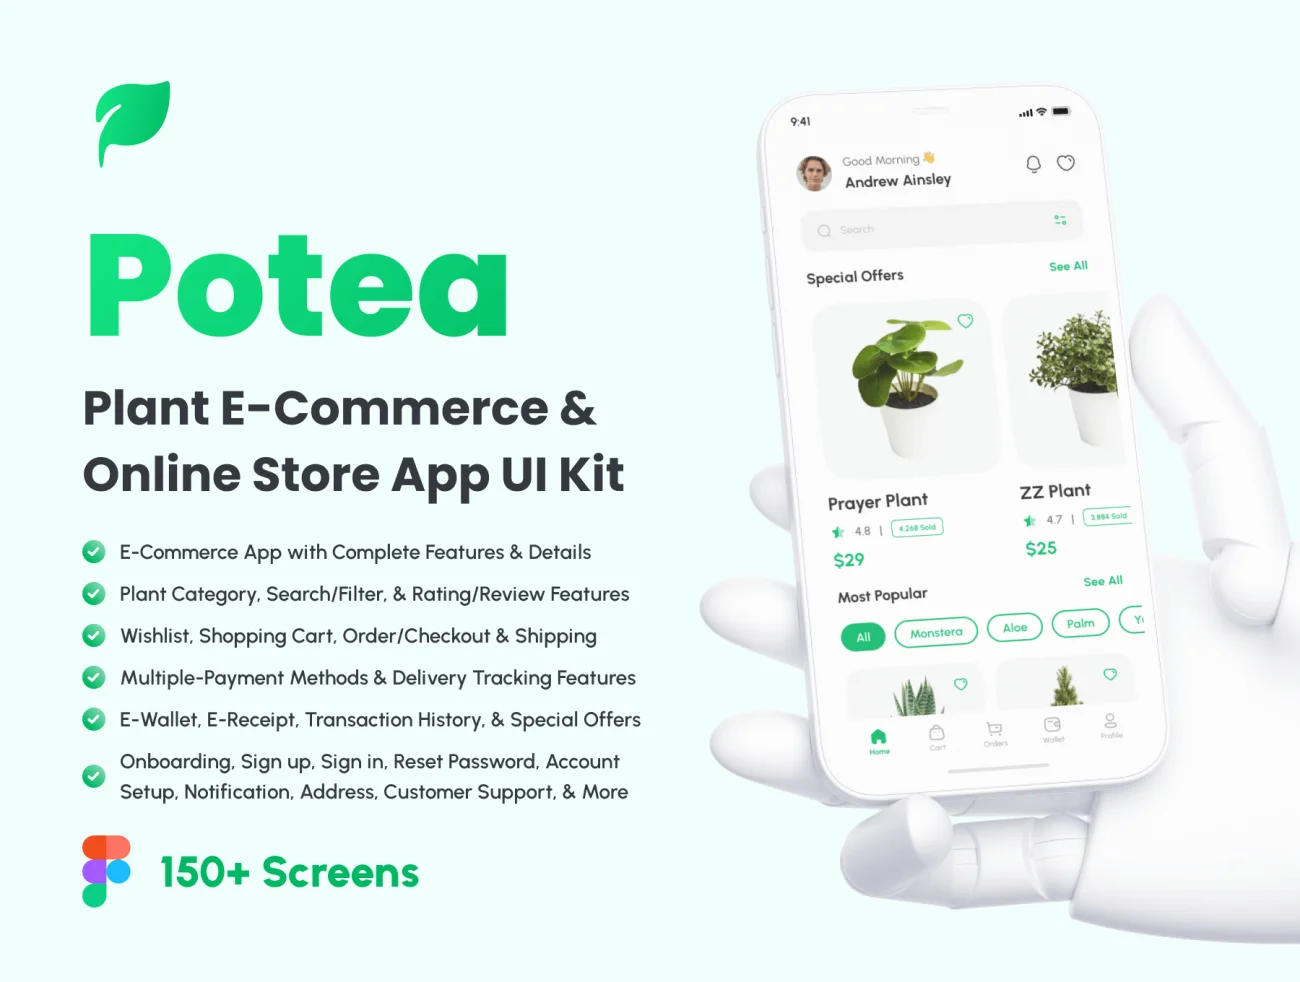 植物电商网购在线商店应用UI套件150屏 Potea - Plant E-Commerce & Online Store App UI Kit .figma-UI/UX、ui套件、主页、介绍、付款、卡片式、应用、网购、详情-到位啦UI